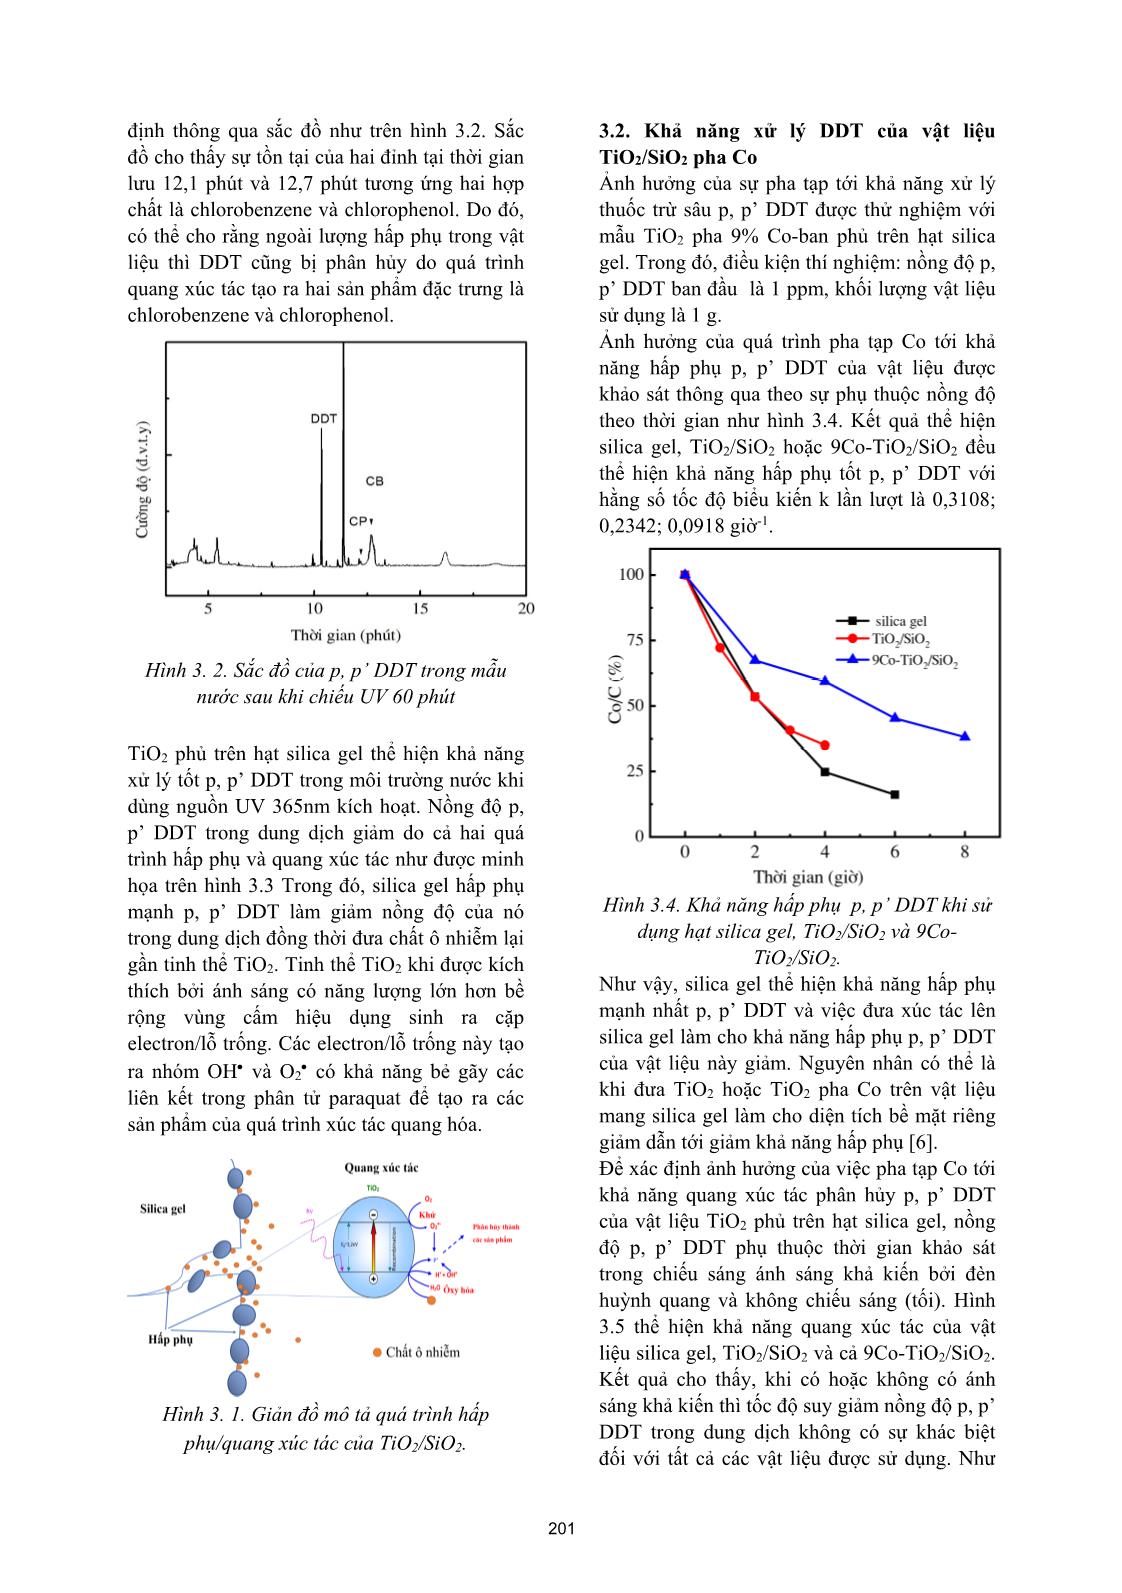 Đánh giá khả năng quang xúc tác phân hủy p, p’ DDT sử dụng TiO₂ phủ trên hạt silica gel trang 4